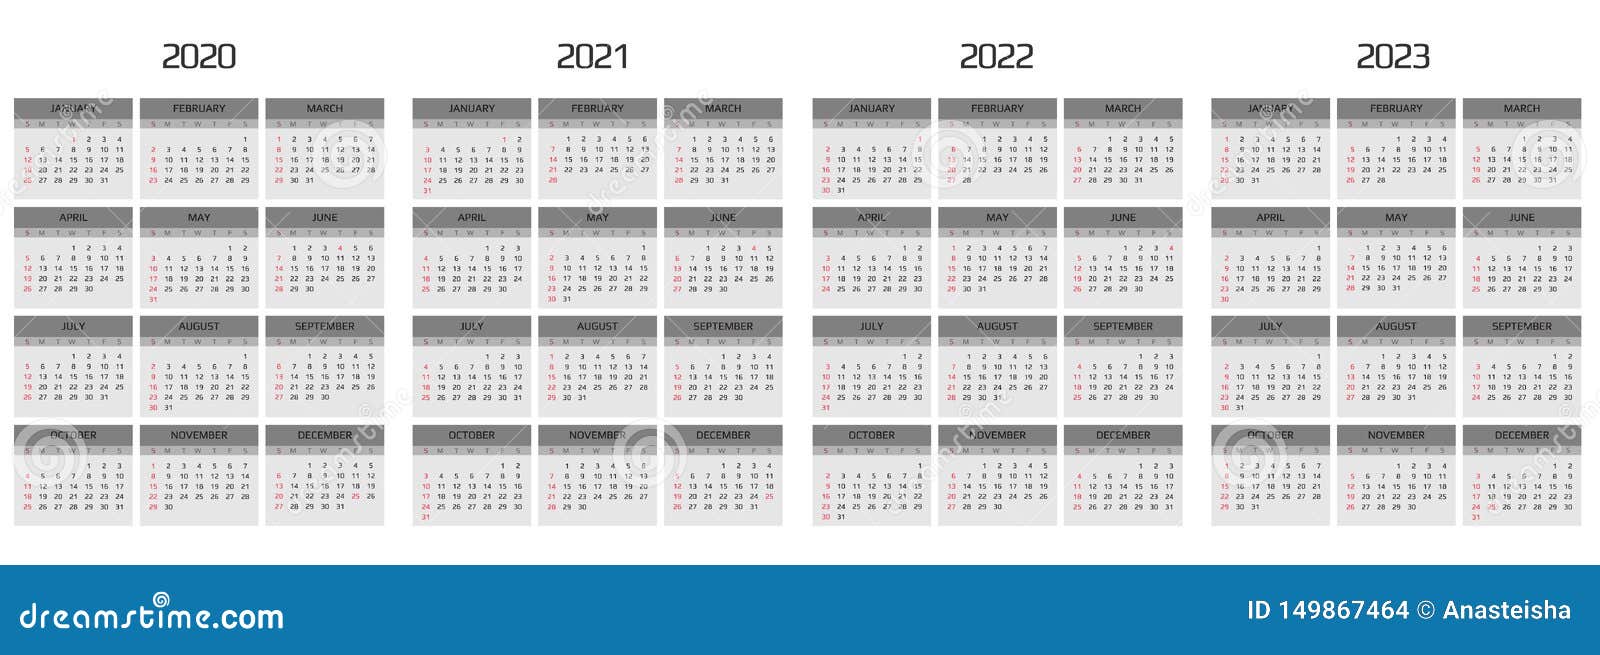 Недели 2020 2021. Календарь 2020 2021 2022. Календарь 2021 2022 2023. Календарь 2020-2022. Календарь 2020-2023.